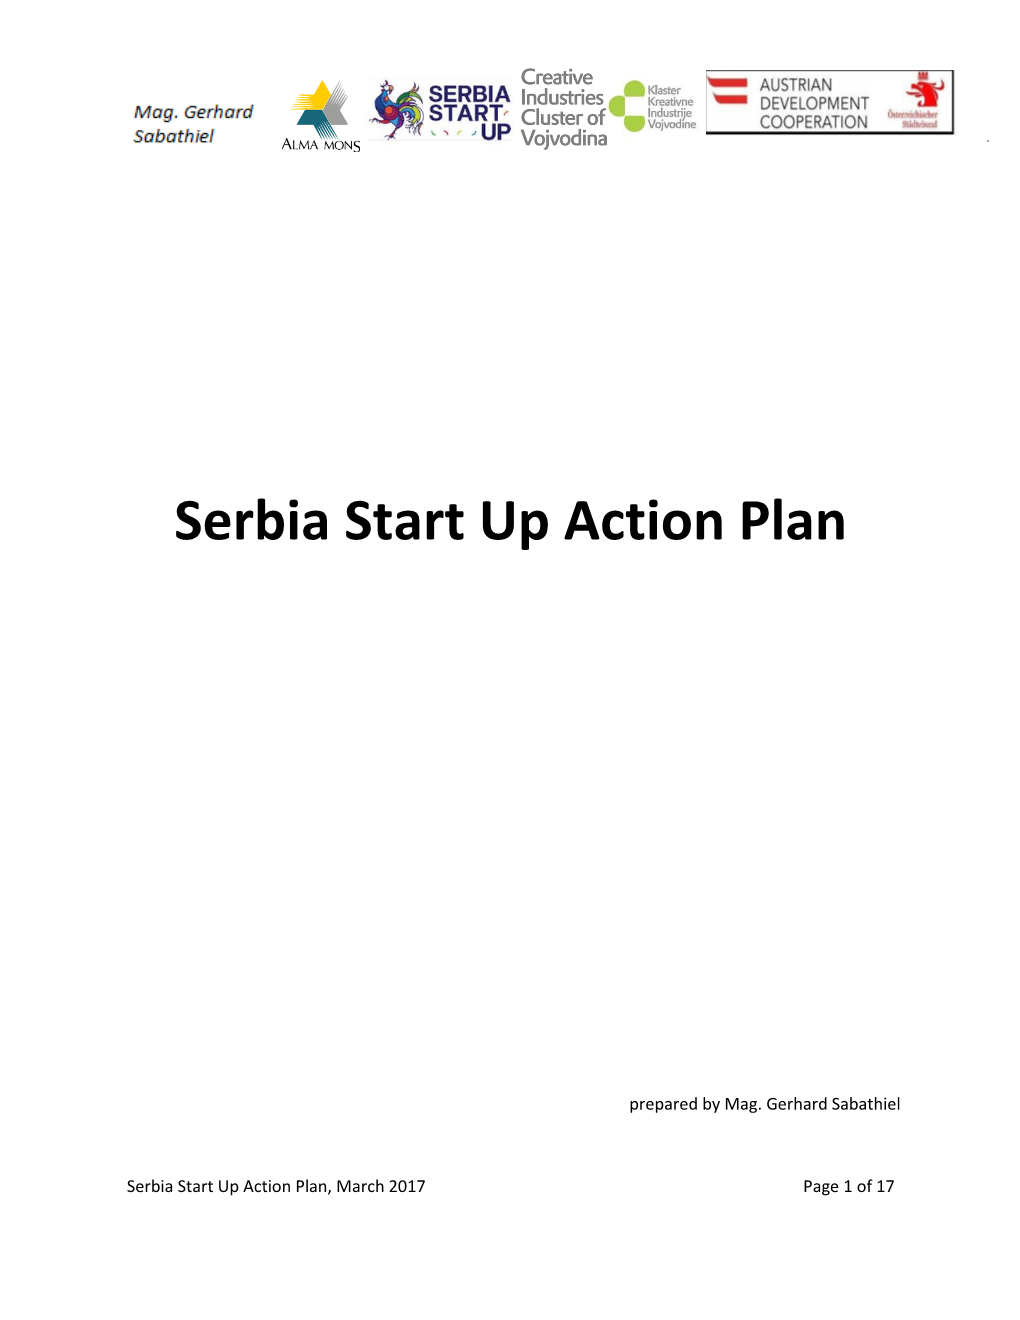 Serbia Start up Action Plan